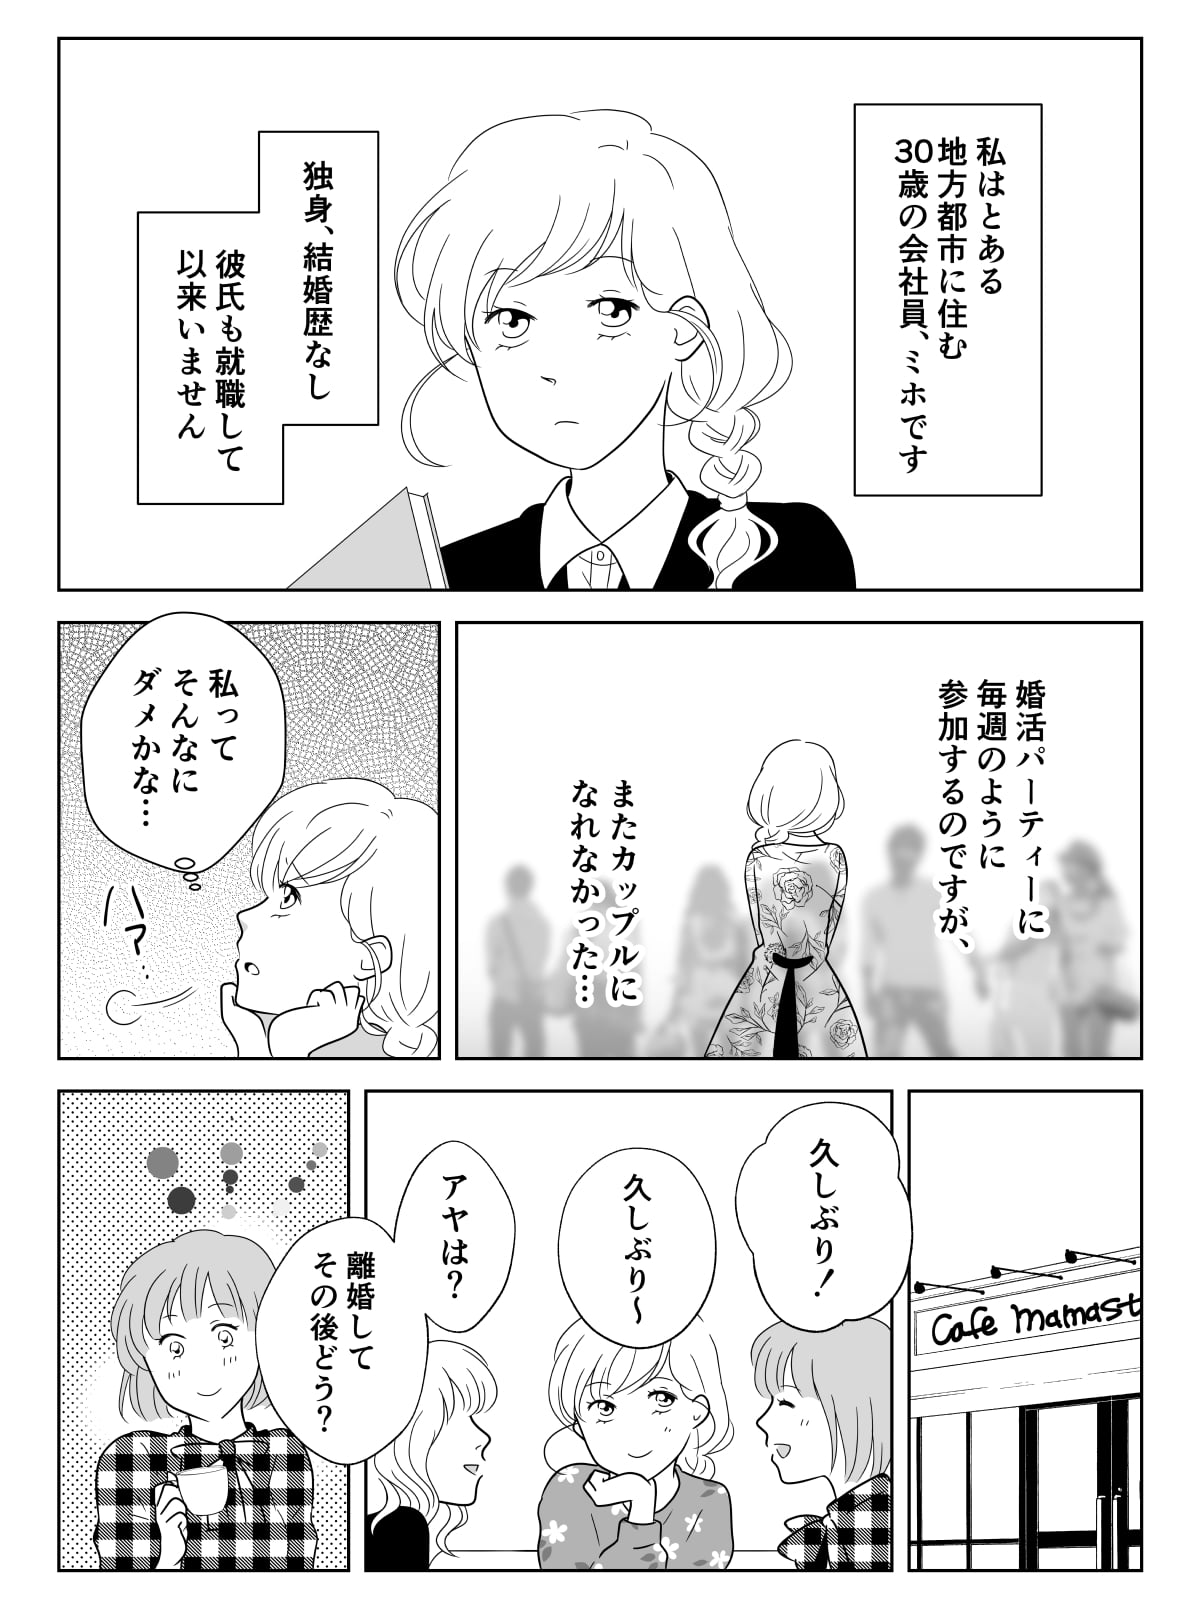 コミック05_001 (1)